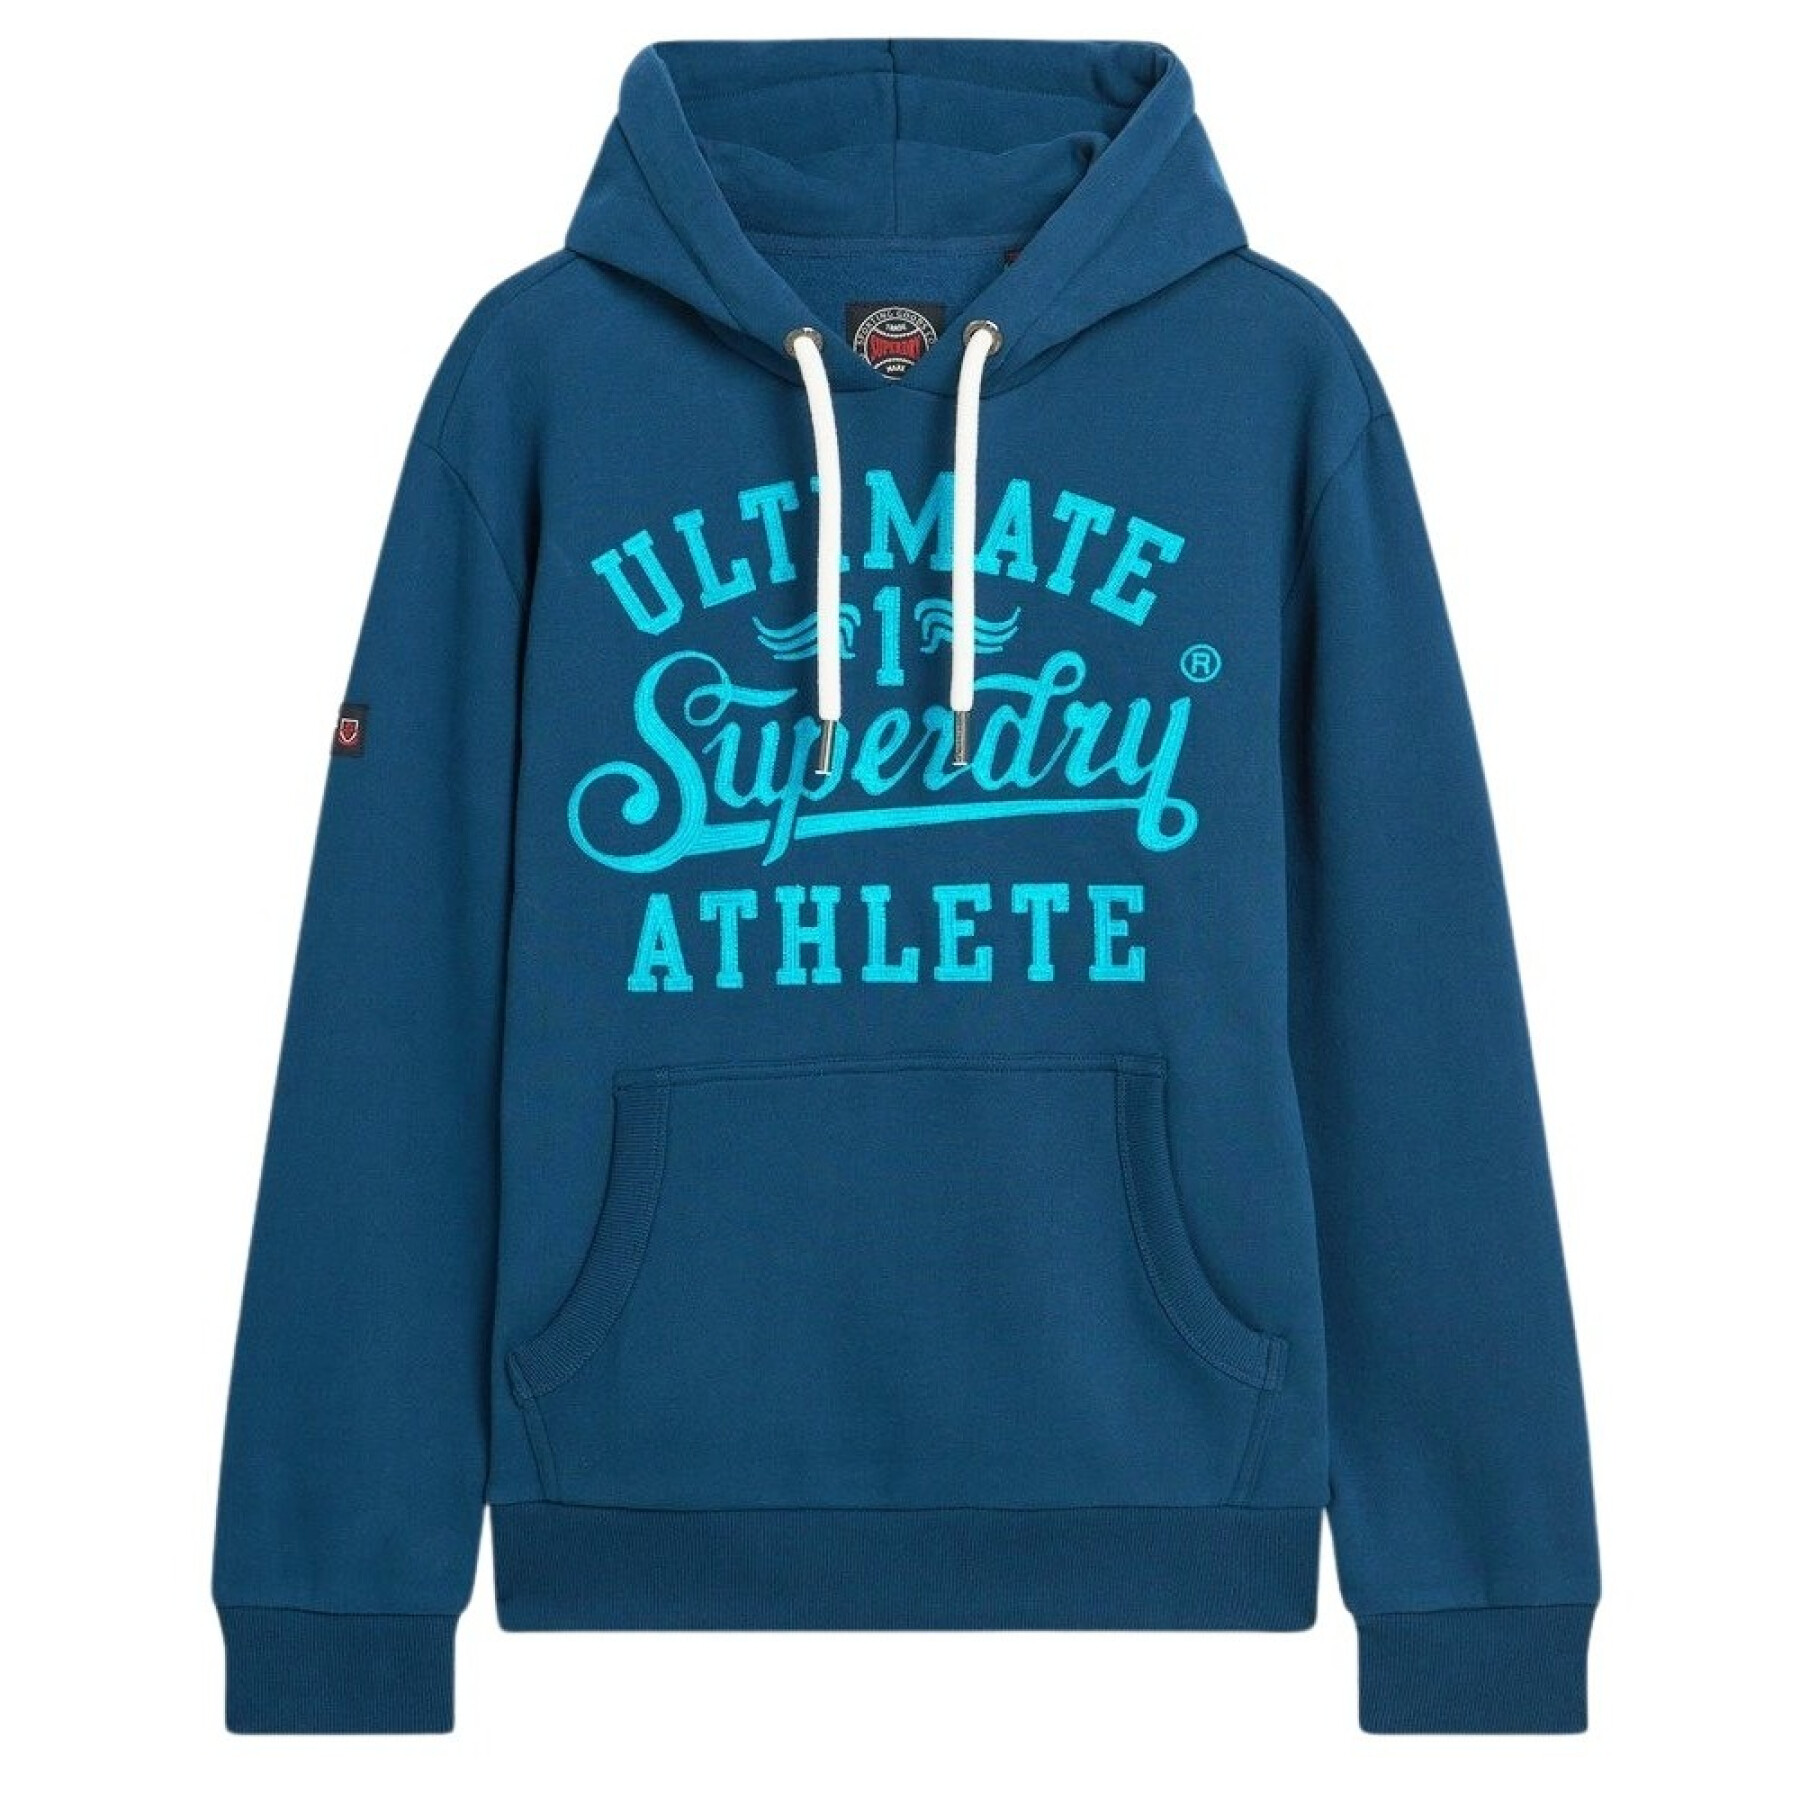 Geborduurde hoodie met atletisch schrift Superdry